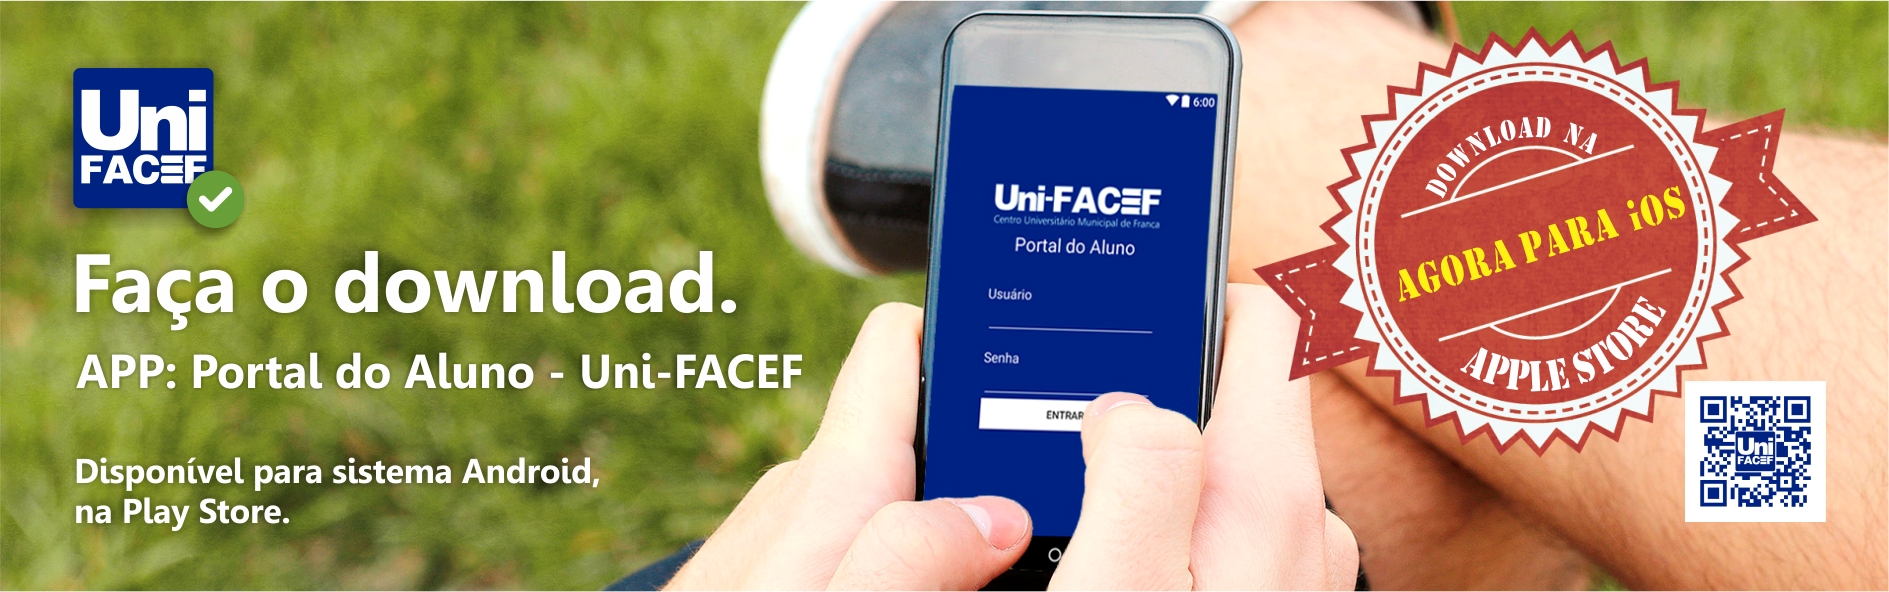 Aplicativo do Uni-FACEF agora também na Apple Store